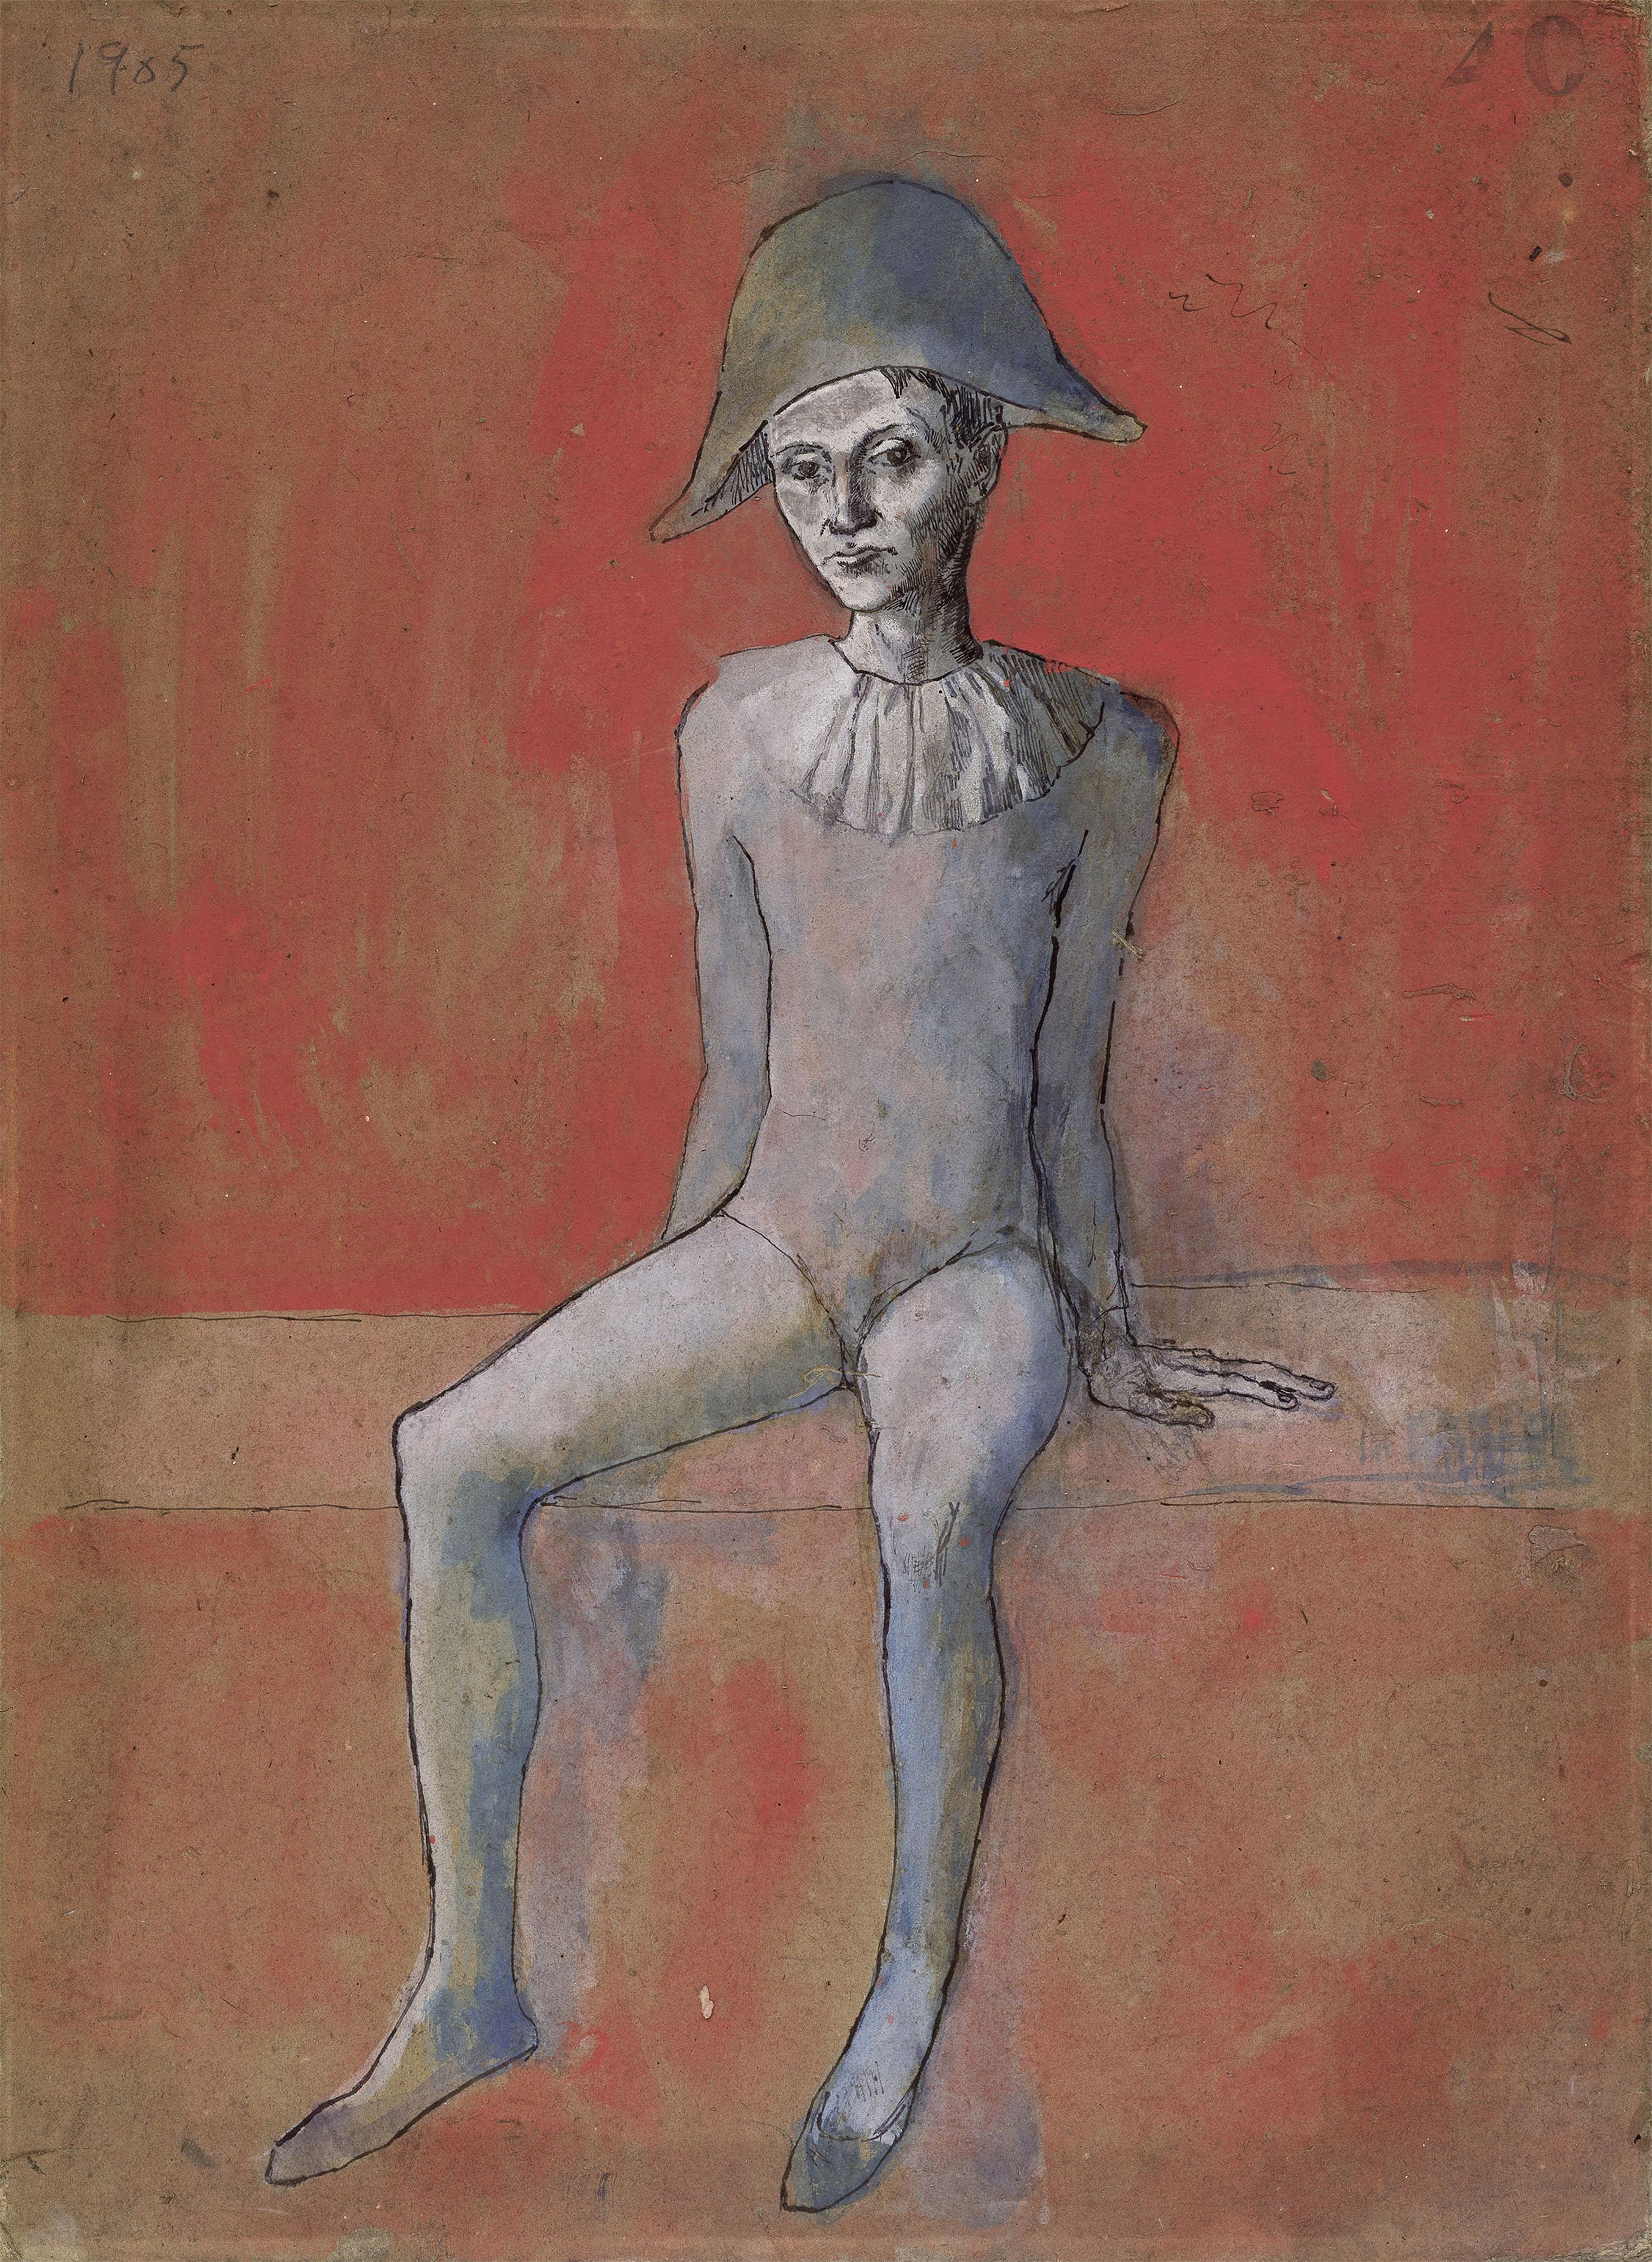 Pablo Picasso, Arlequin assis sur fond rouge, 1905 [© Succession Picasso / 2018 ProLitteris, Zurich 2018  bpk / Nationalgalerie, SMB, Museum Berggruen / Jens Ziehe - Jens Ziehe]